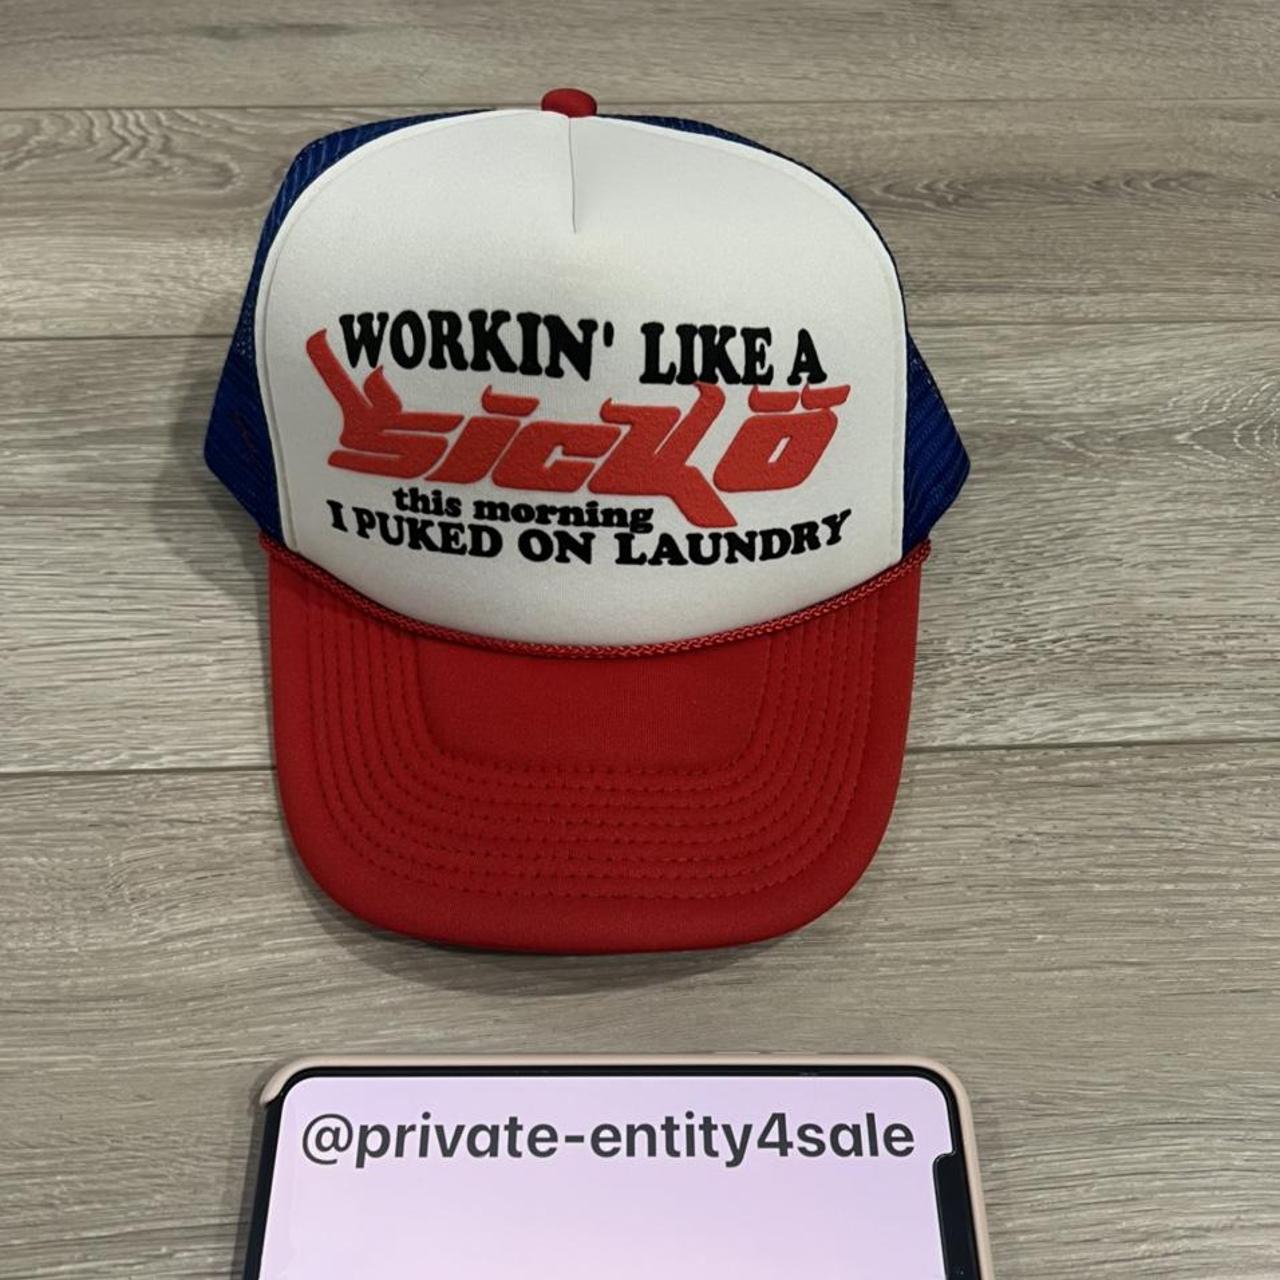 Sicko “Working like a sicko” trucker hat Asking $100 - Depop